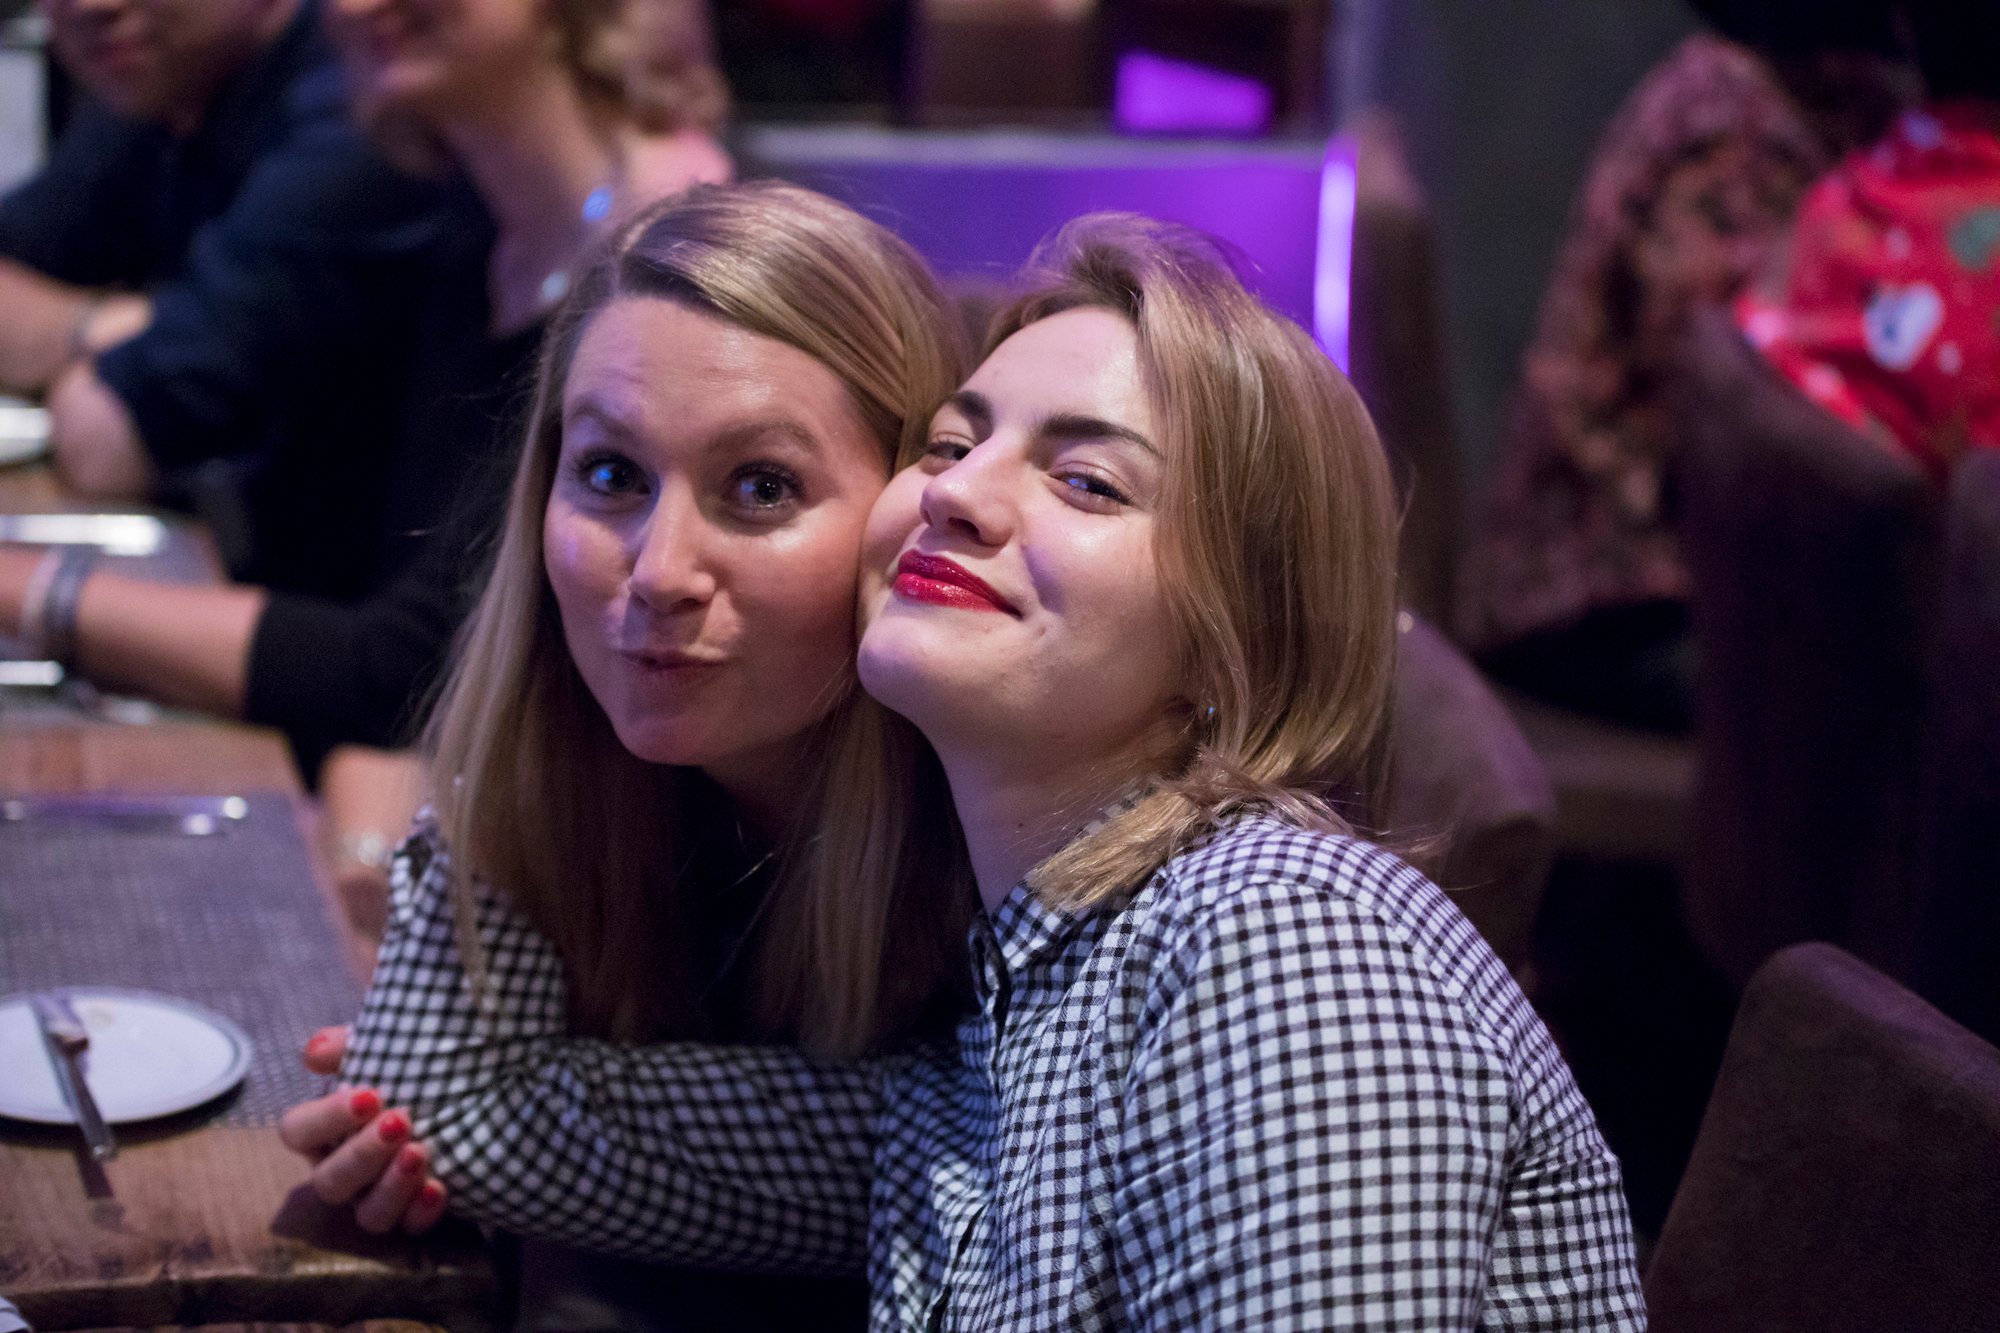 Zwei junge Frauen posieren gemeinsam vor der Kamera an einem Esstisch